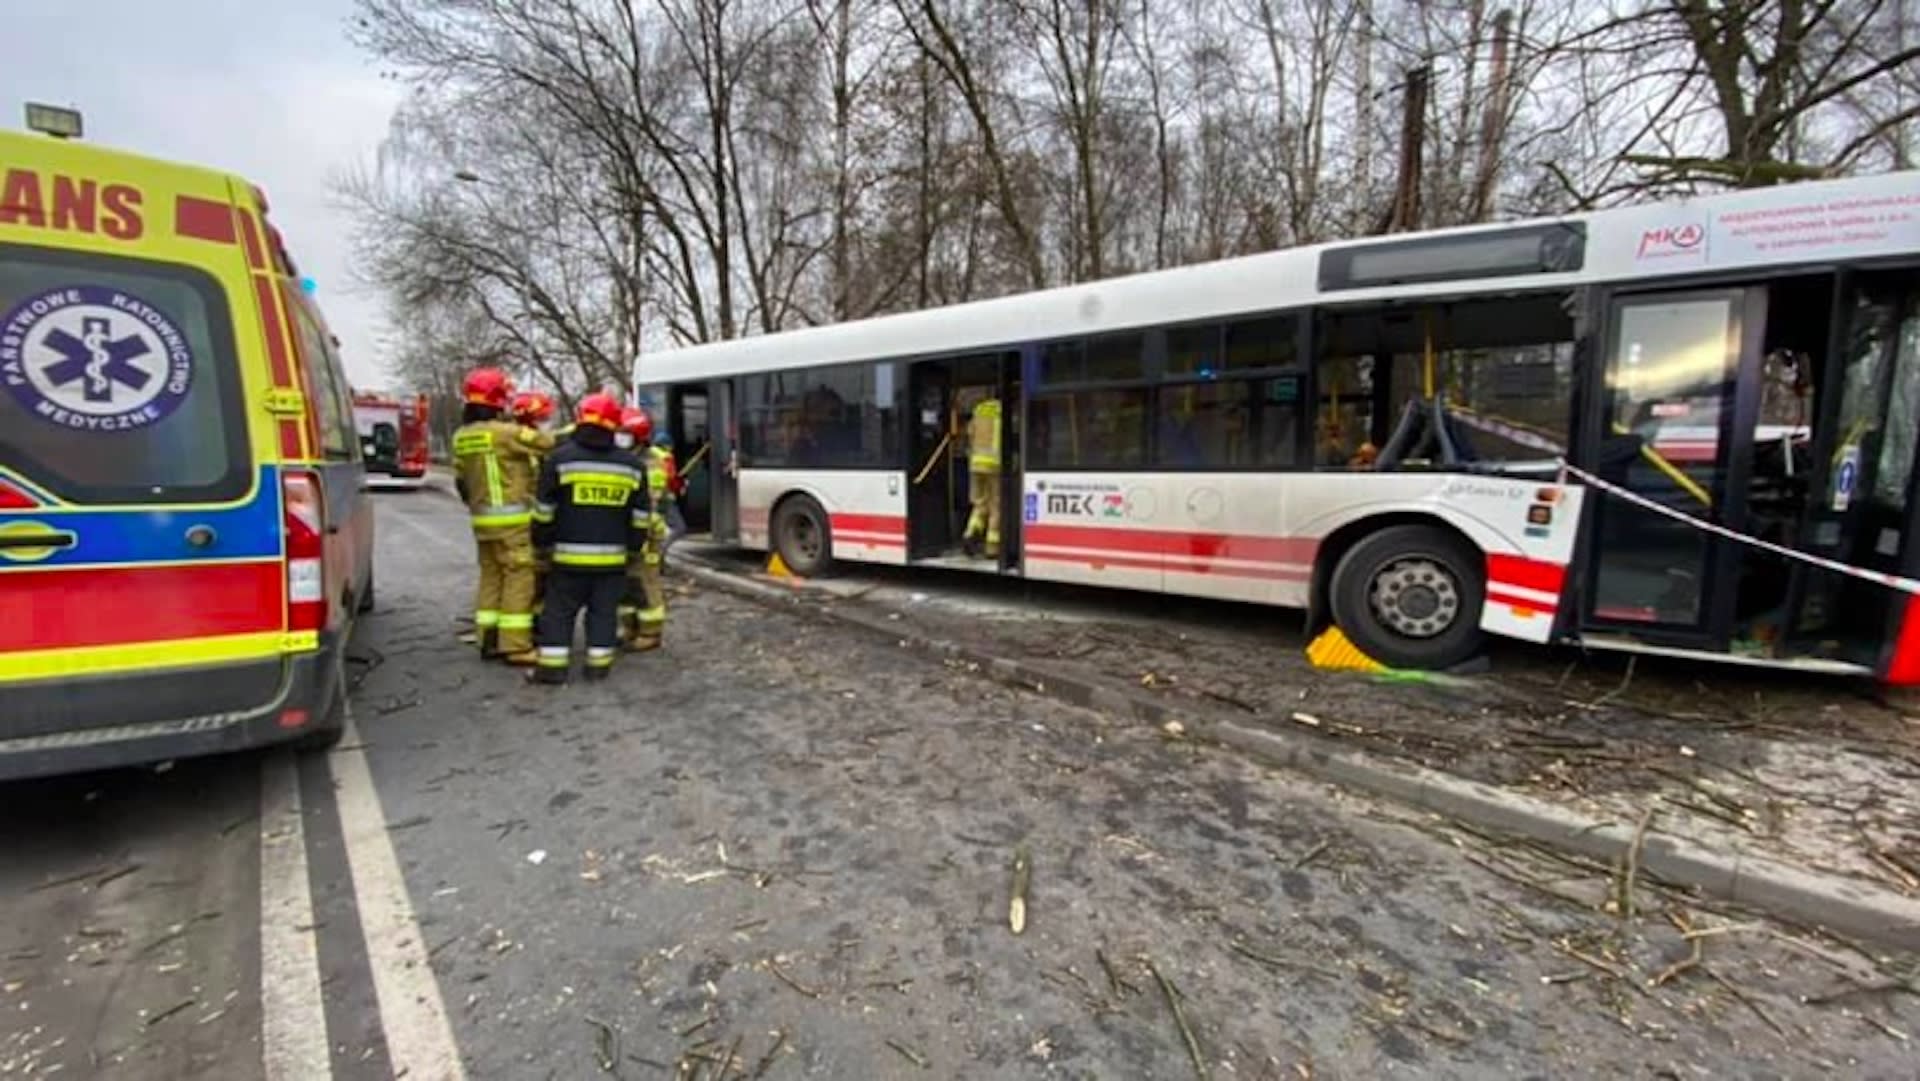 Jastrzębie-Zdrój: wypadek miejskiego autobusu. Pojazd uderzył w drzewo